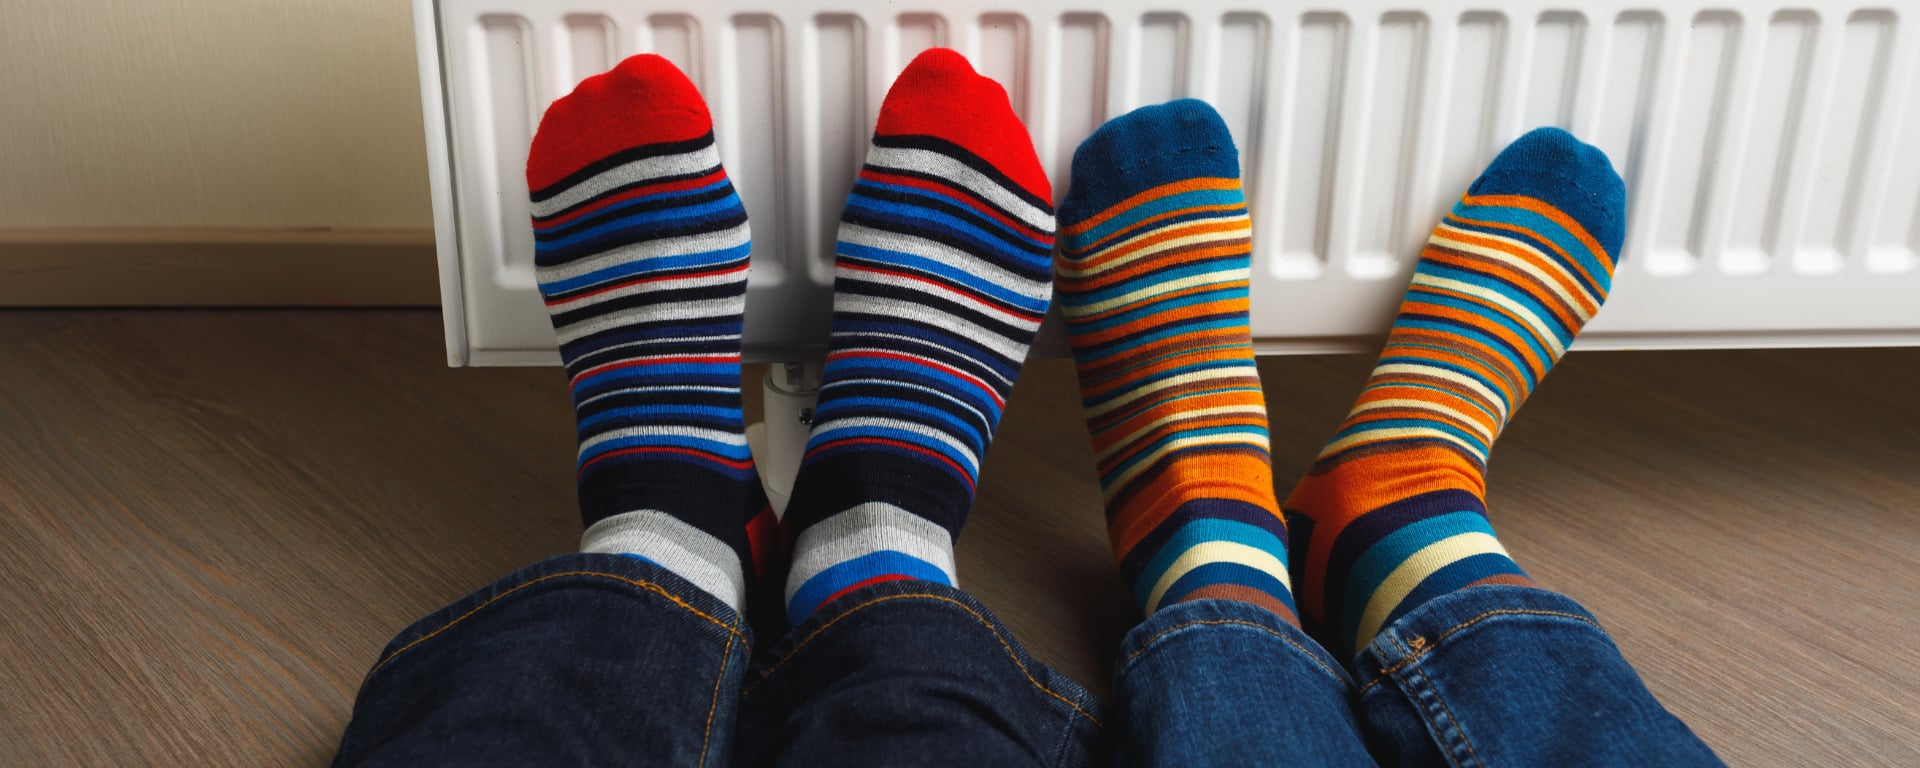 Best Heated Socks - Feature Image